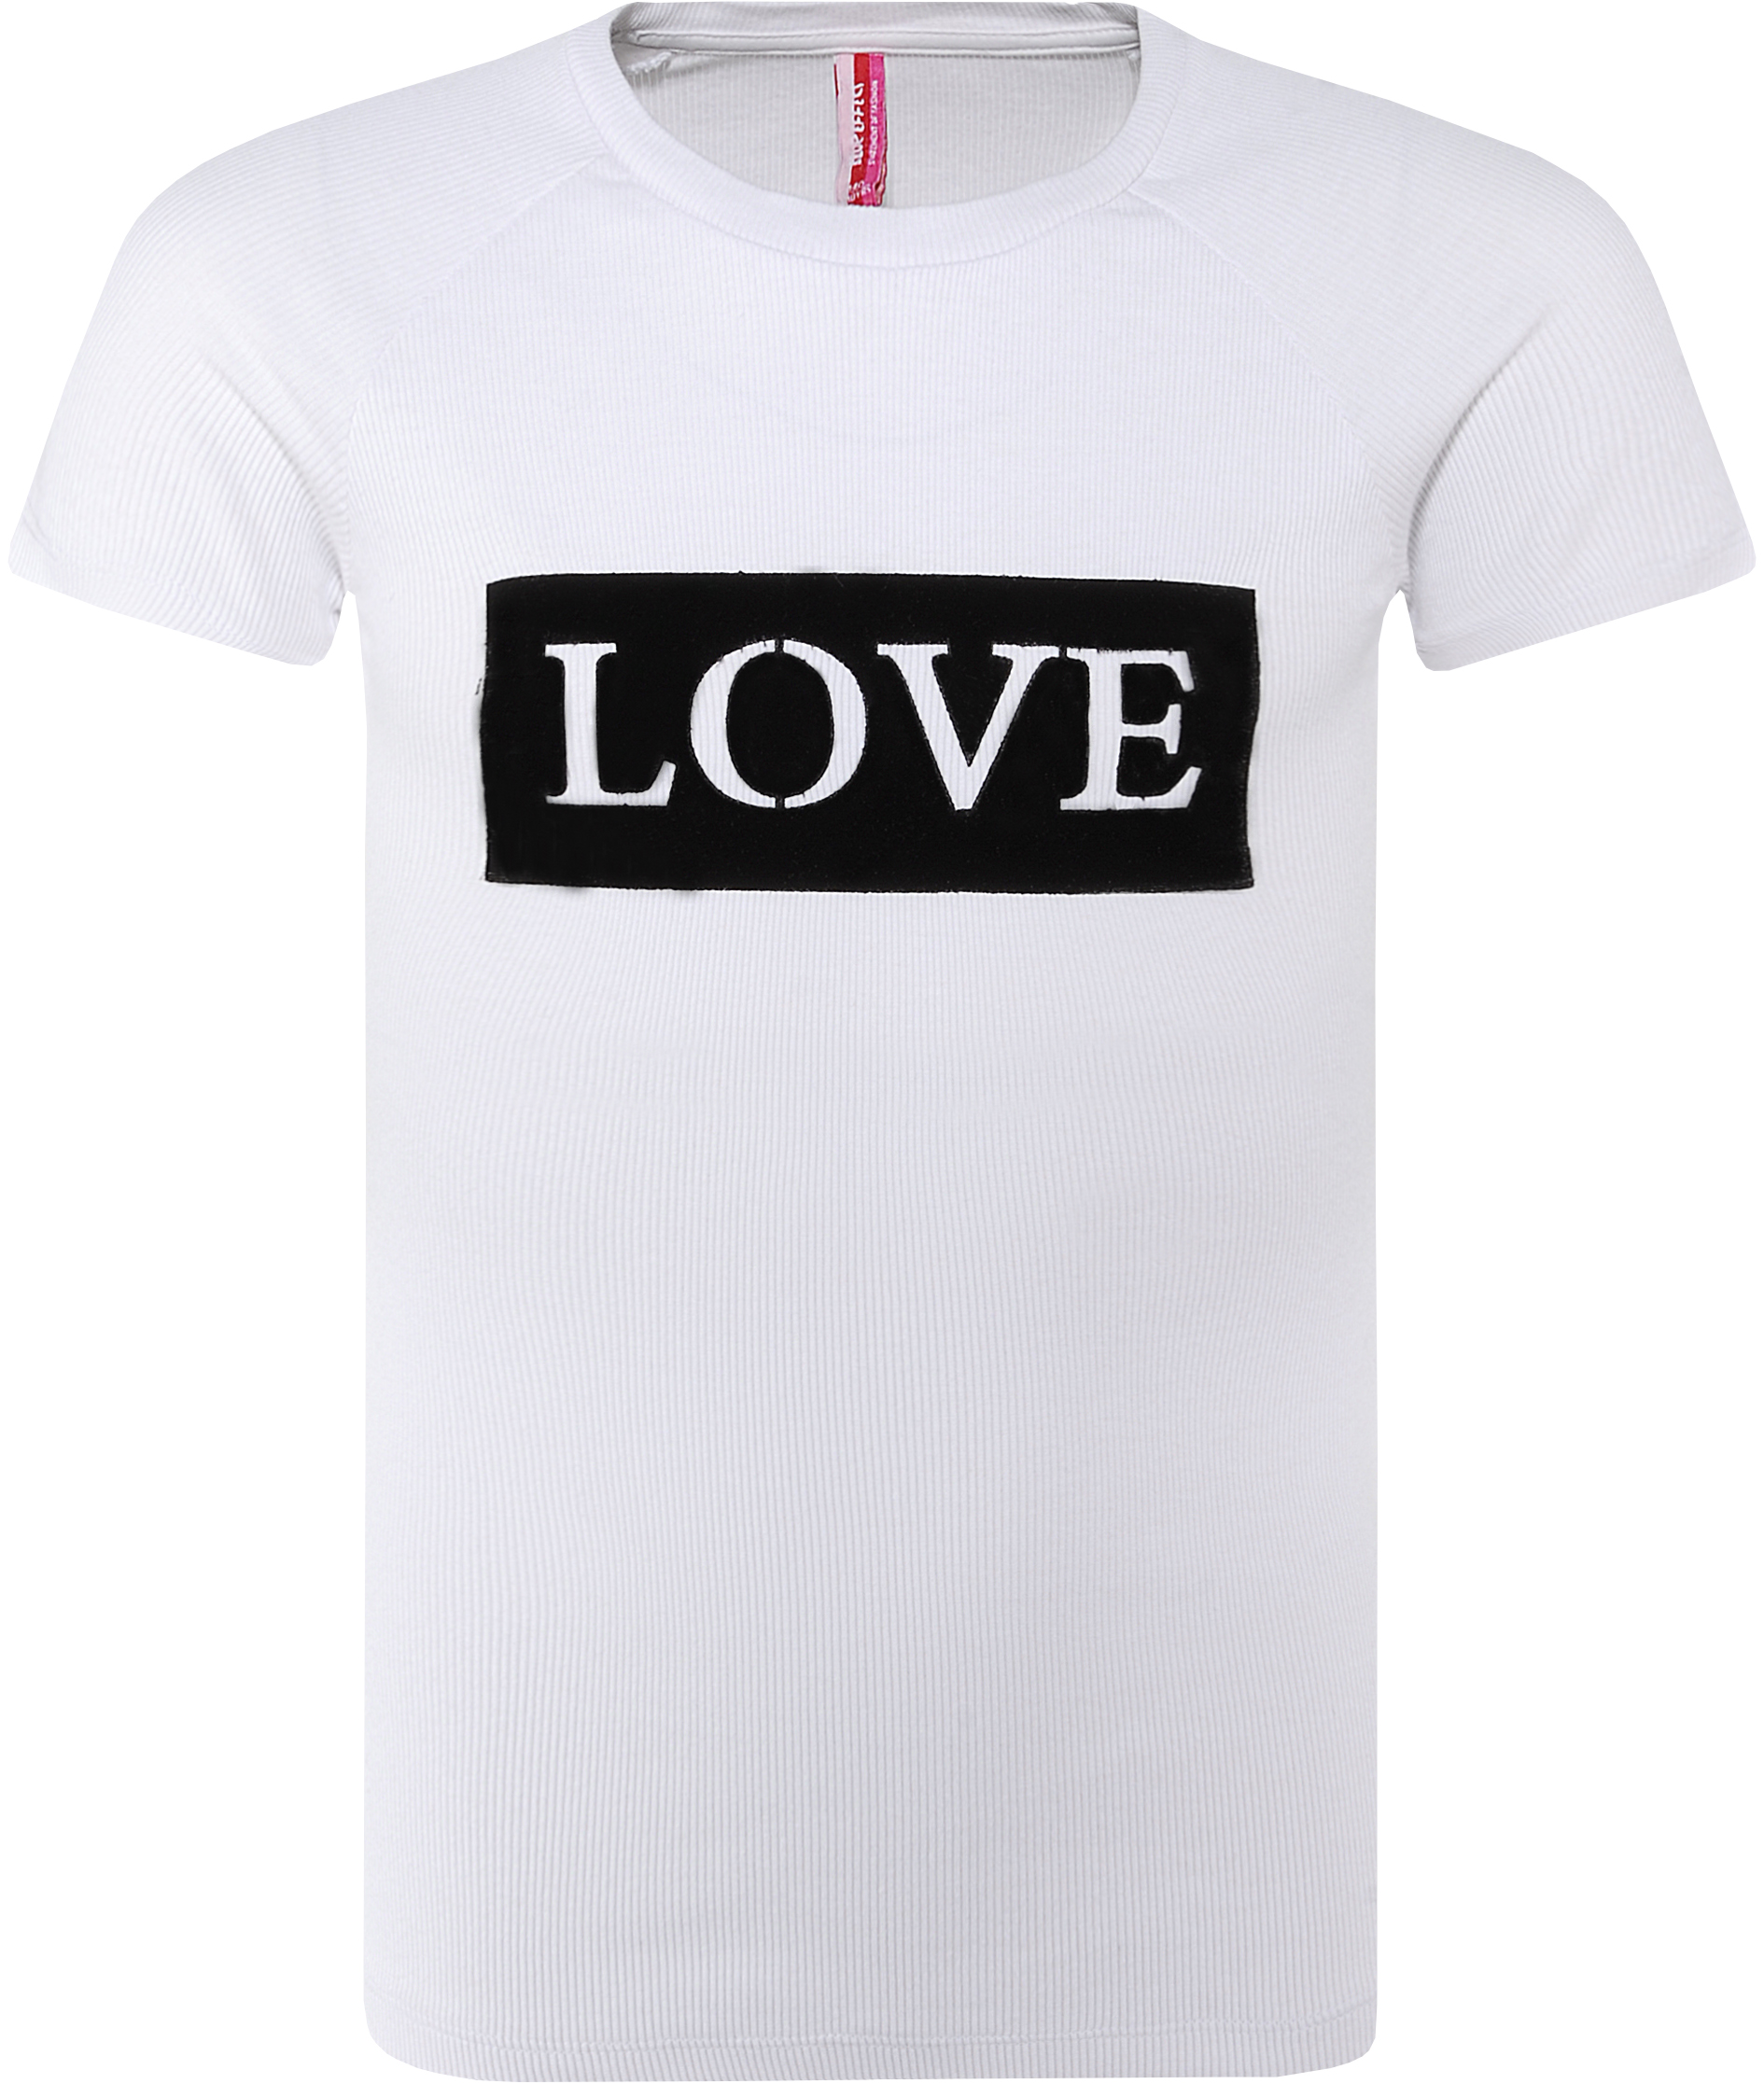 5484-Girls T-Shirt -Love